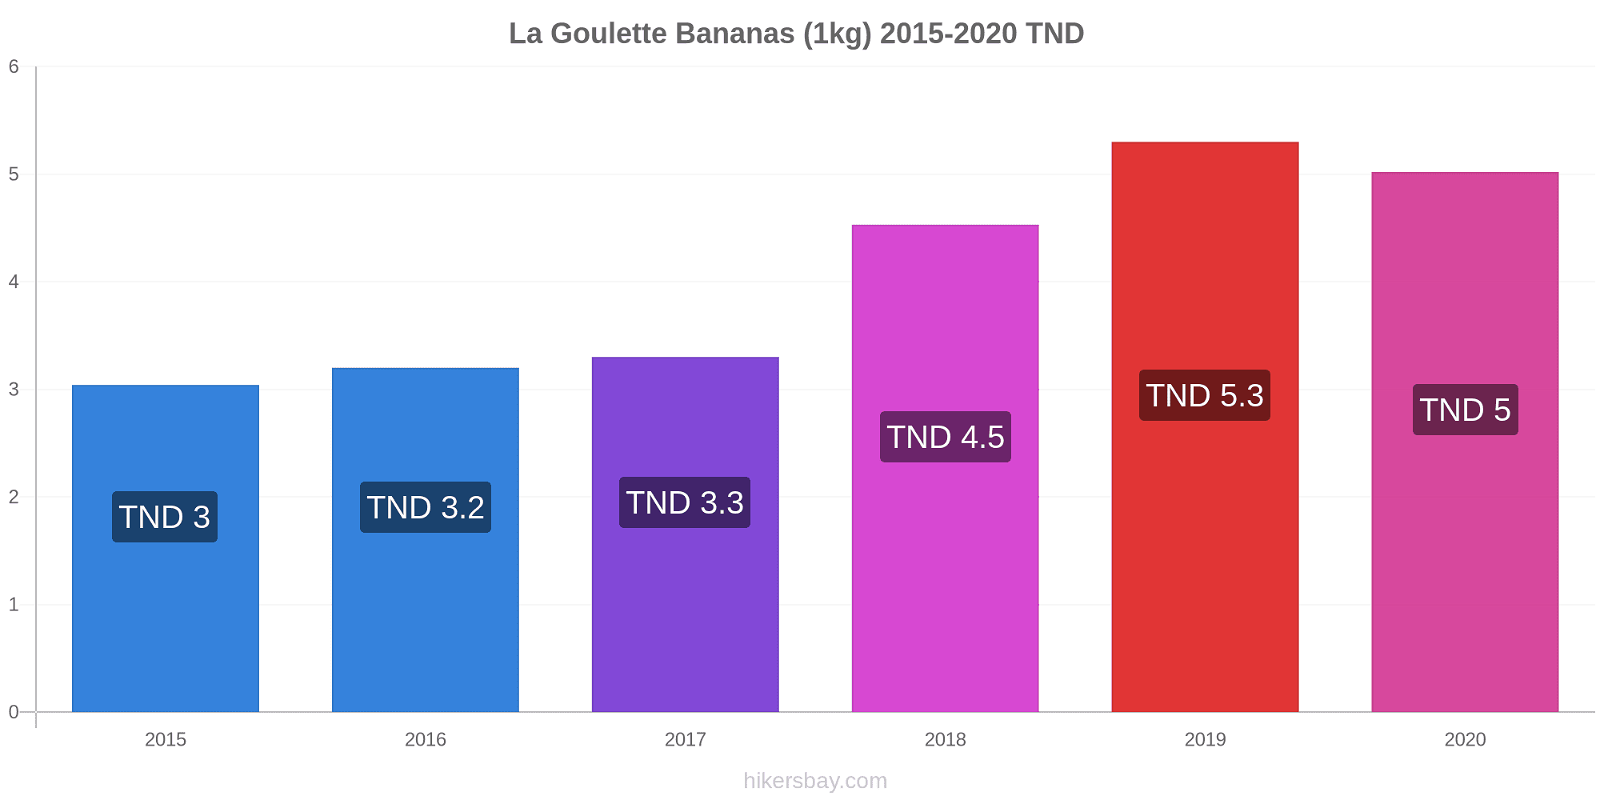 La Goulette variação de preço Banana (1kg) hikersbay.com